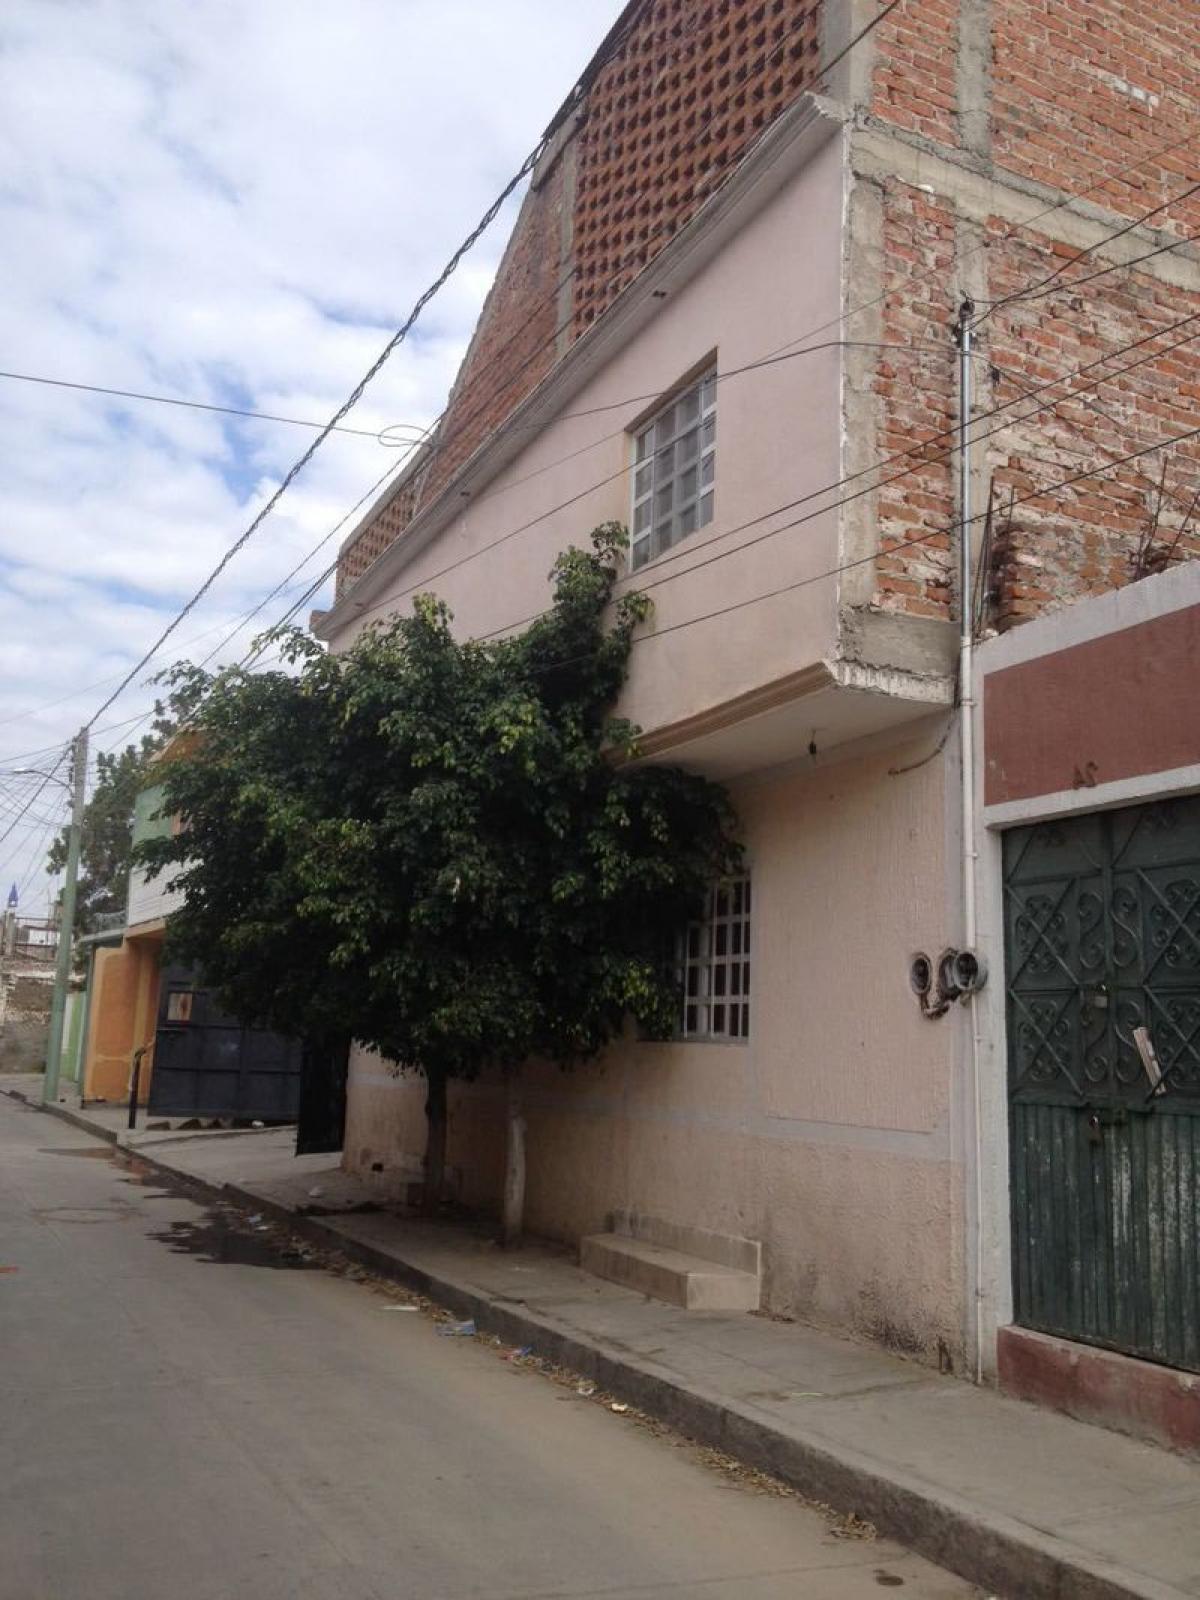 Picture of Home For Sale in Silao, Guanajuato, Mexico